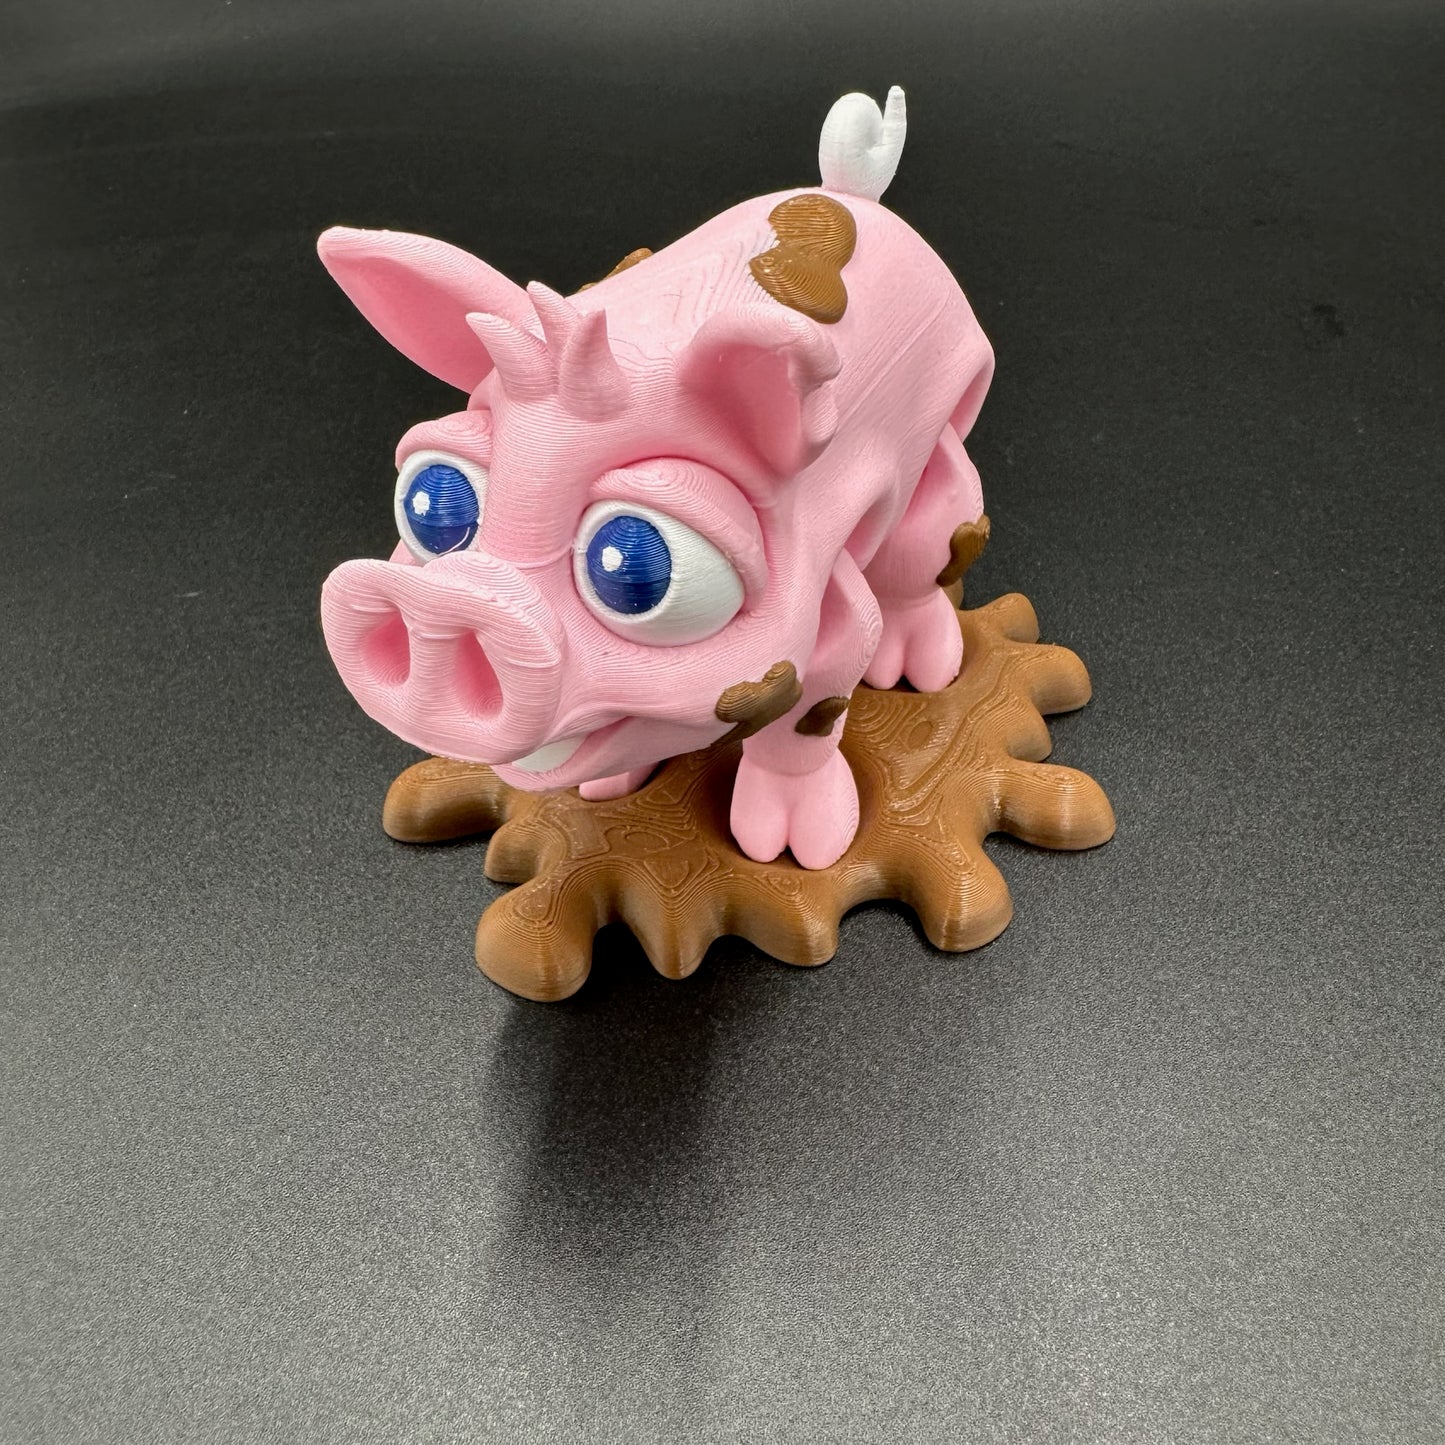 3D Printed Pig in Slop